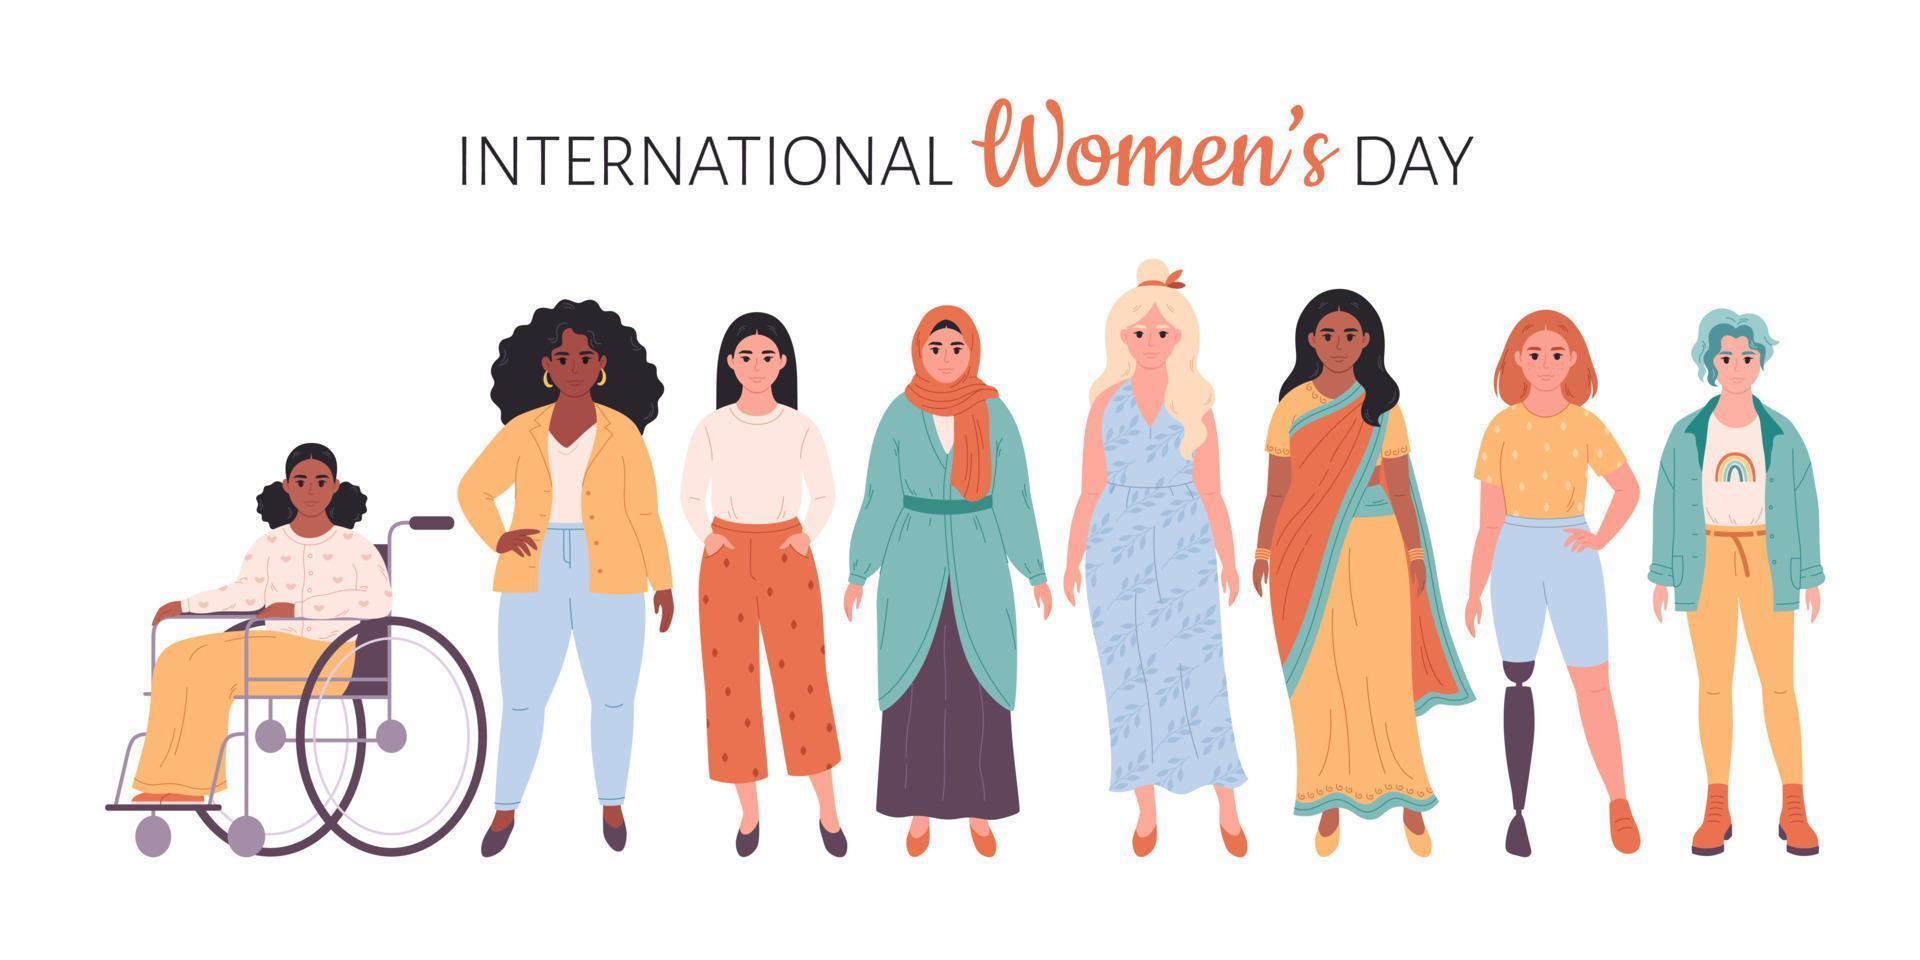 Internationale vrouwen dag. feminisme, vrouw gelijkwaardigheid, machtiging. menigte van vrouw van verschillend rassen, nationaliteiten, leeftijden, lichaam types vector